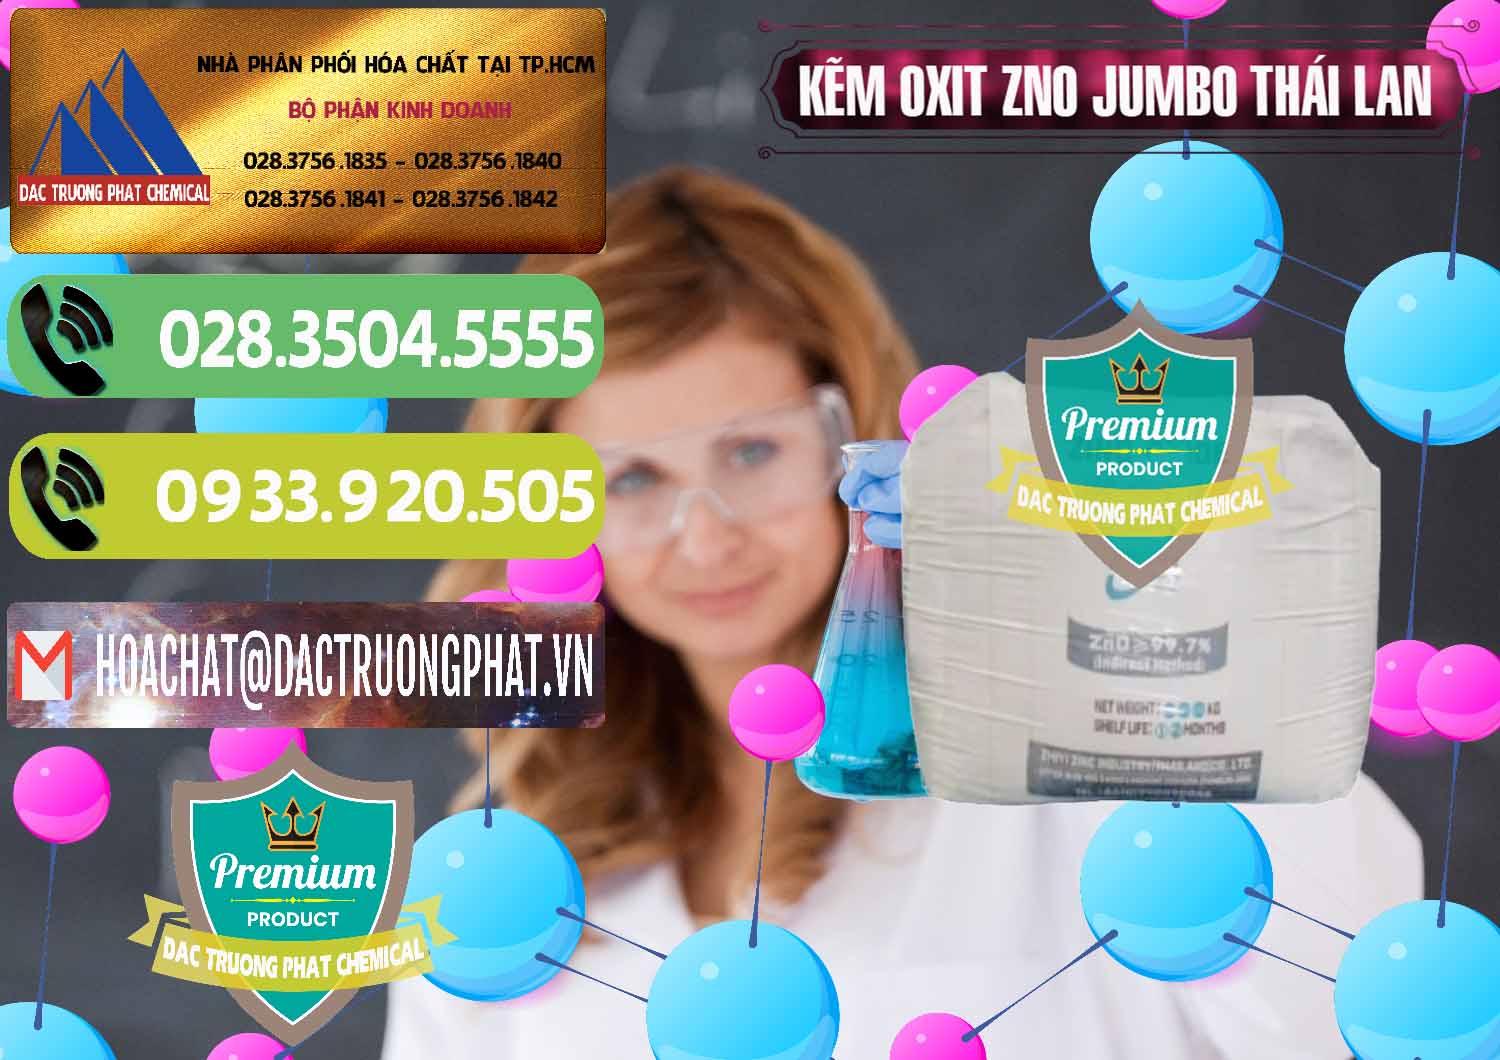 Chuyên bán và cung cấp Zinc Oxide - Bột Kẽm Oxit ZNO Jumbo Bành Thái Lan Thailand - 0370 - Đơn vị cung ứng & phân phối hóa chất tại TP.HCM - hoachatmientay.vn